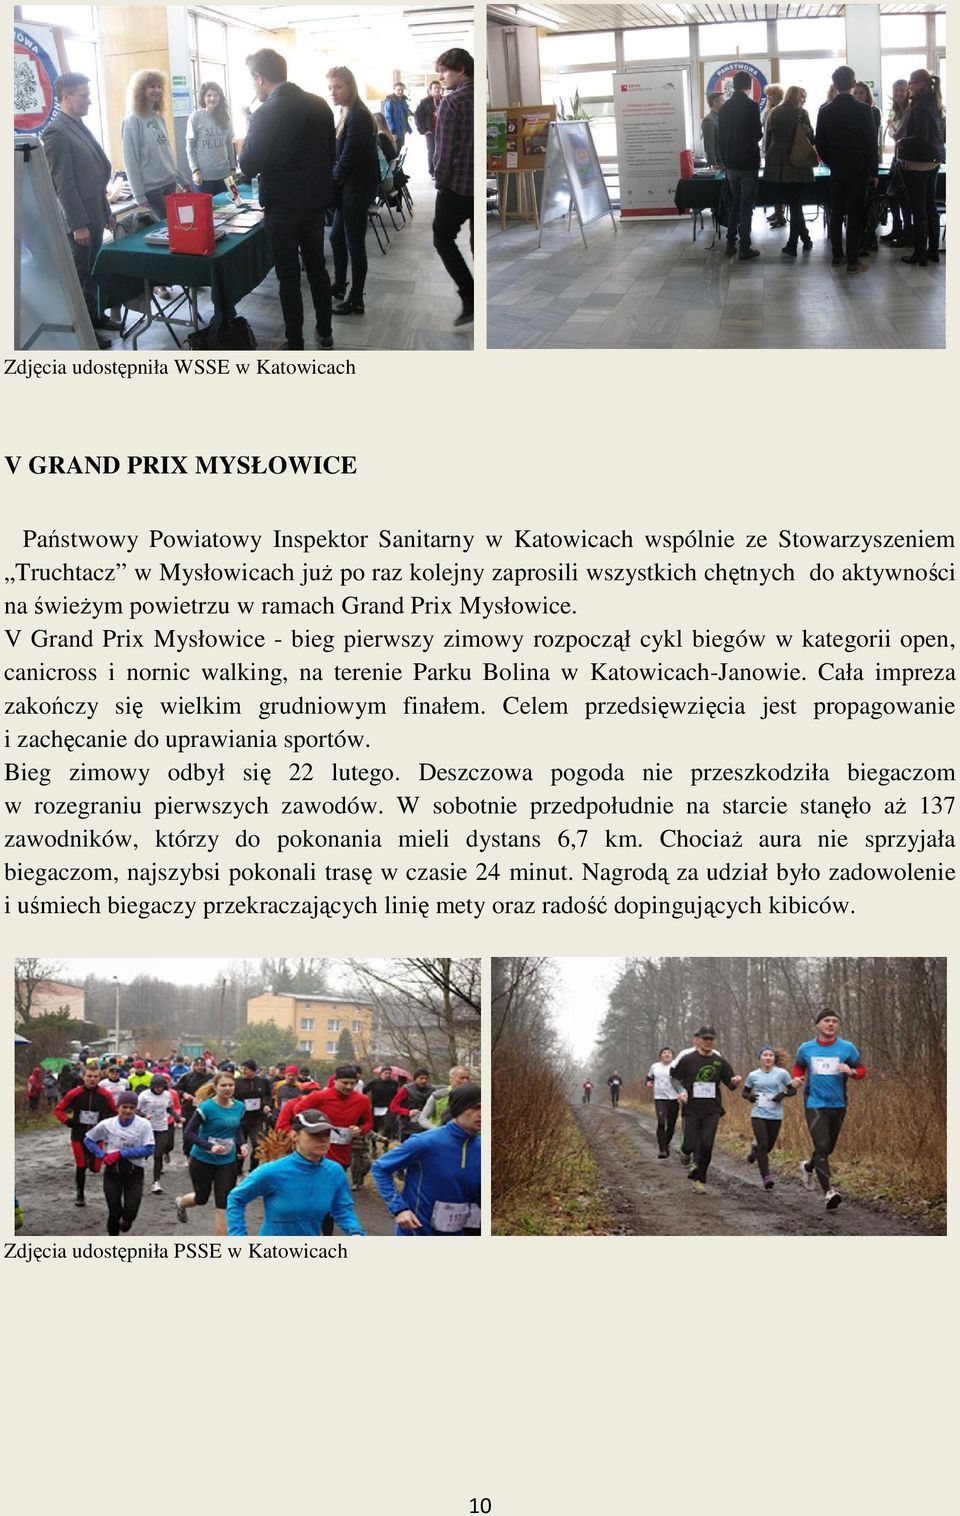 V Grand Prix Mysłowice - bieg pierwszy zimowy rozpoczął cykl biegów w kategorii open, canicross i nornic walking, na terenie Parku Bolina w Katowicach-Janowie.